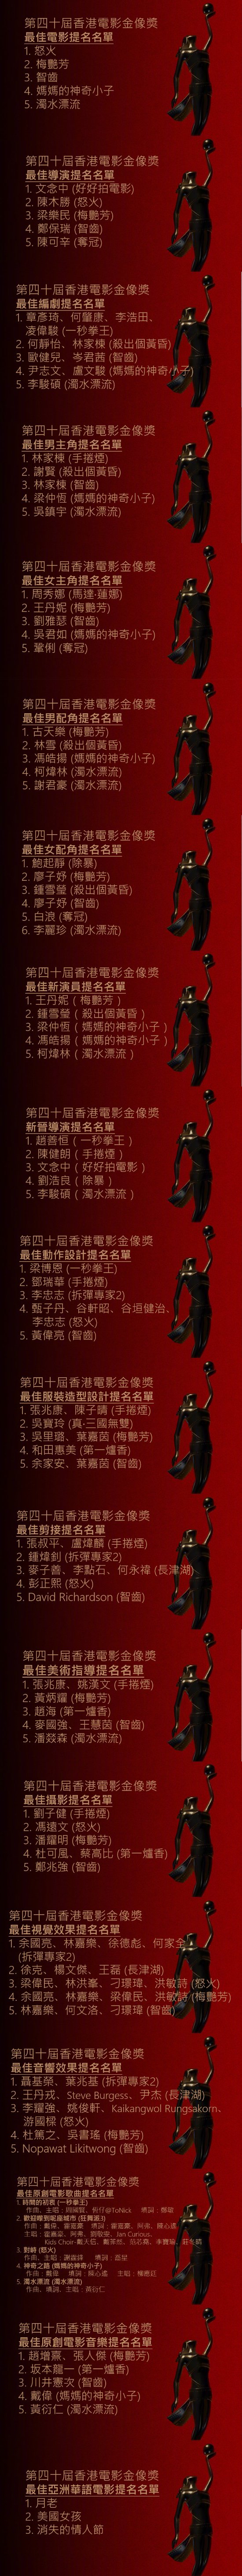 第40届香港金像奖提名公布 悬疑片《智齿》获14项提名领跑、林家栋两部影片获两次影帝提名